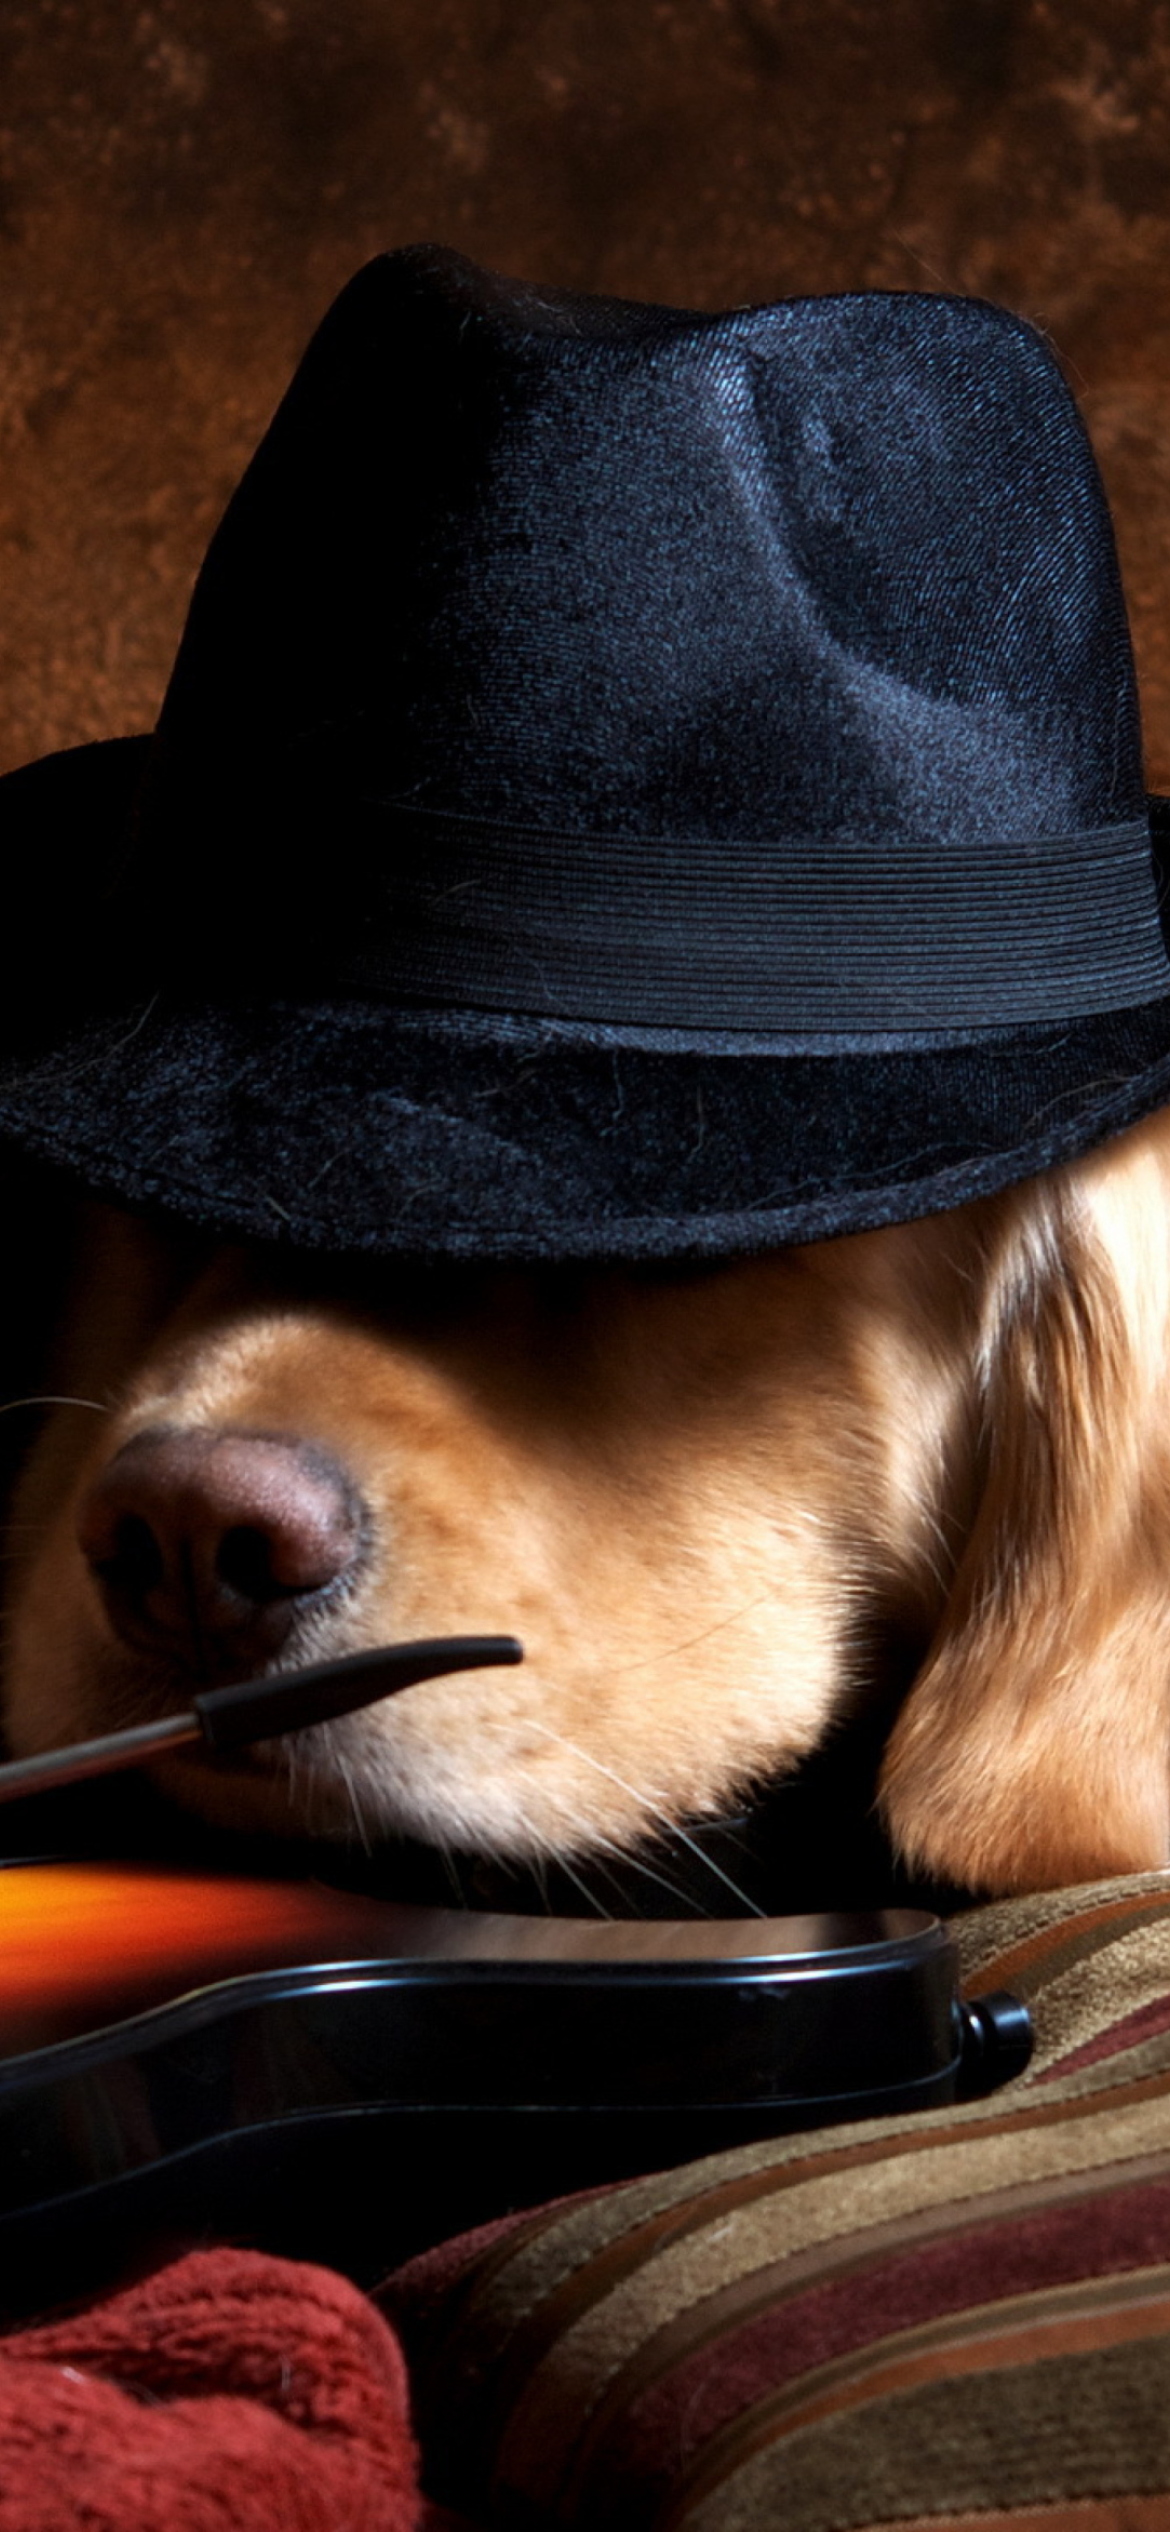 Das Dog In Hat Wallpaper 1170x2532